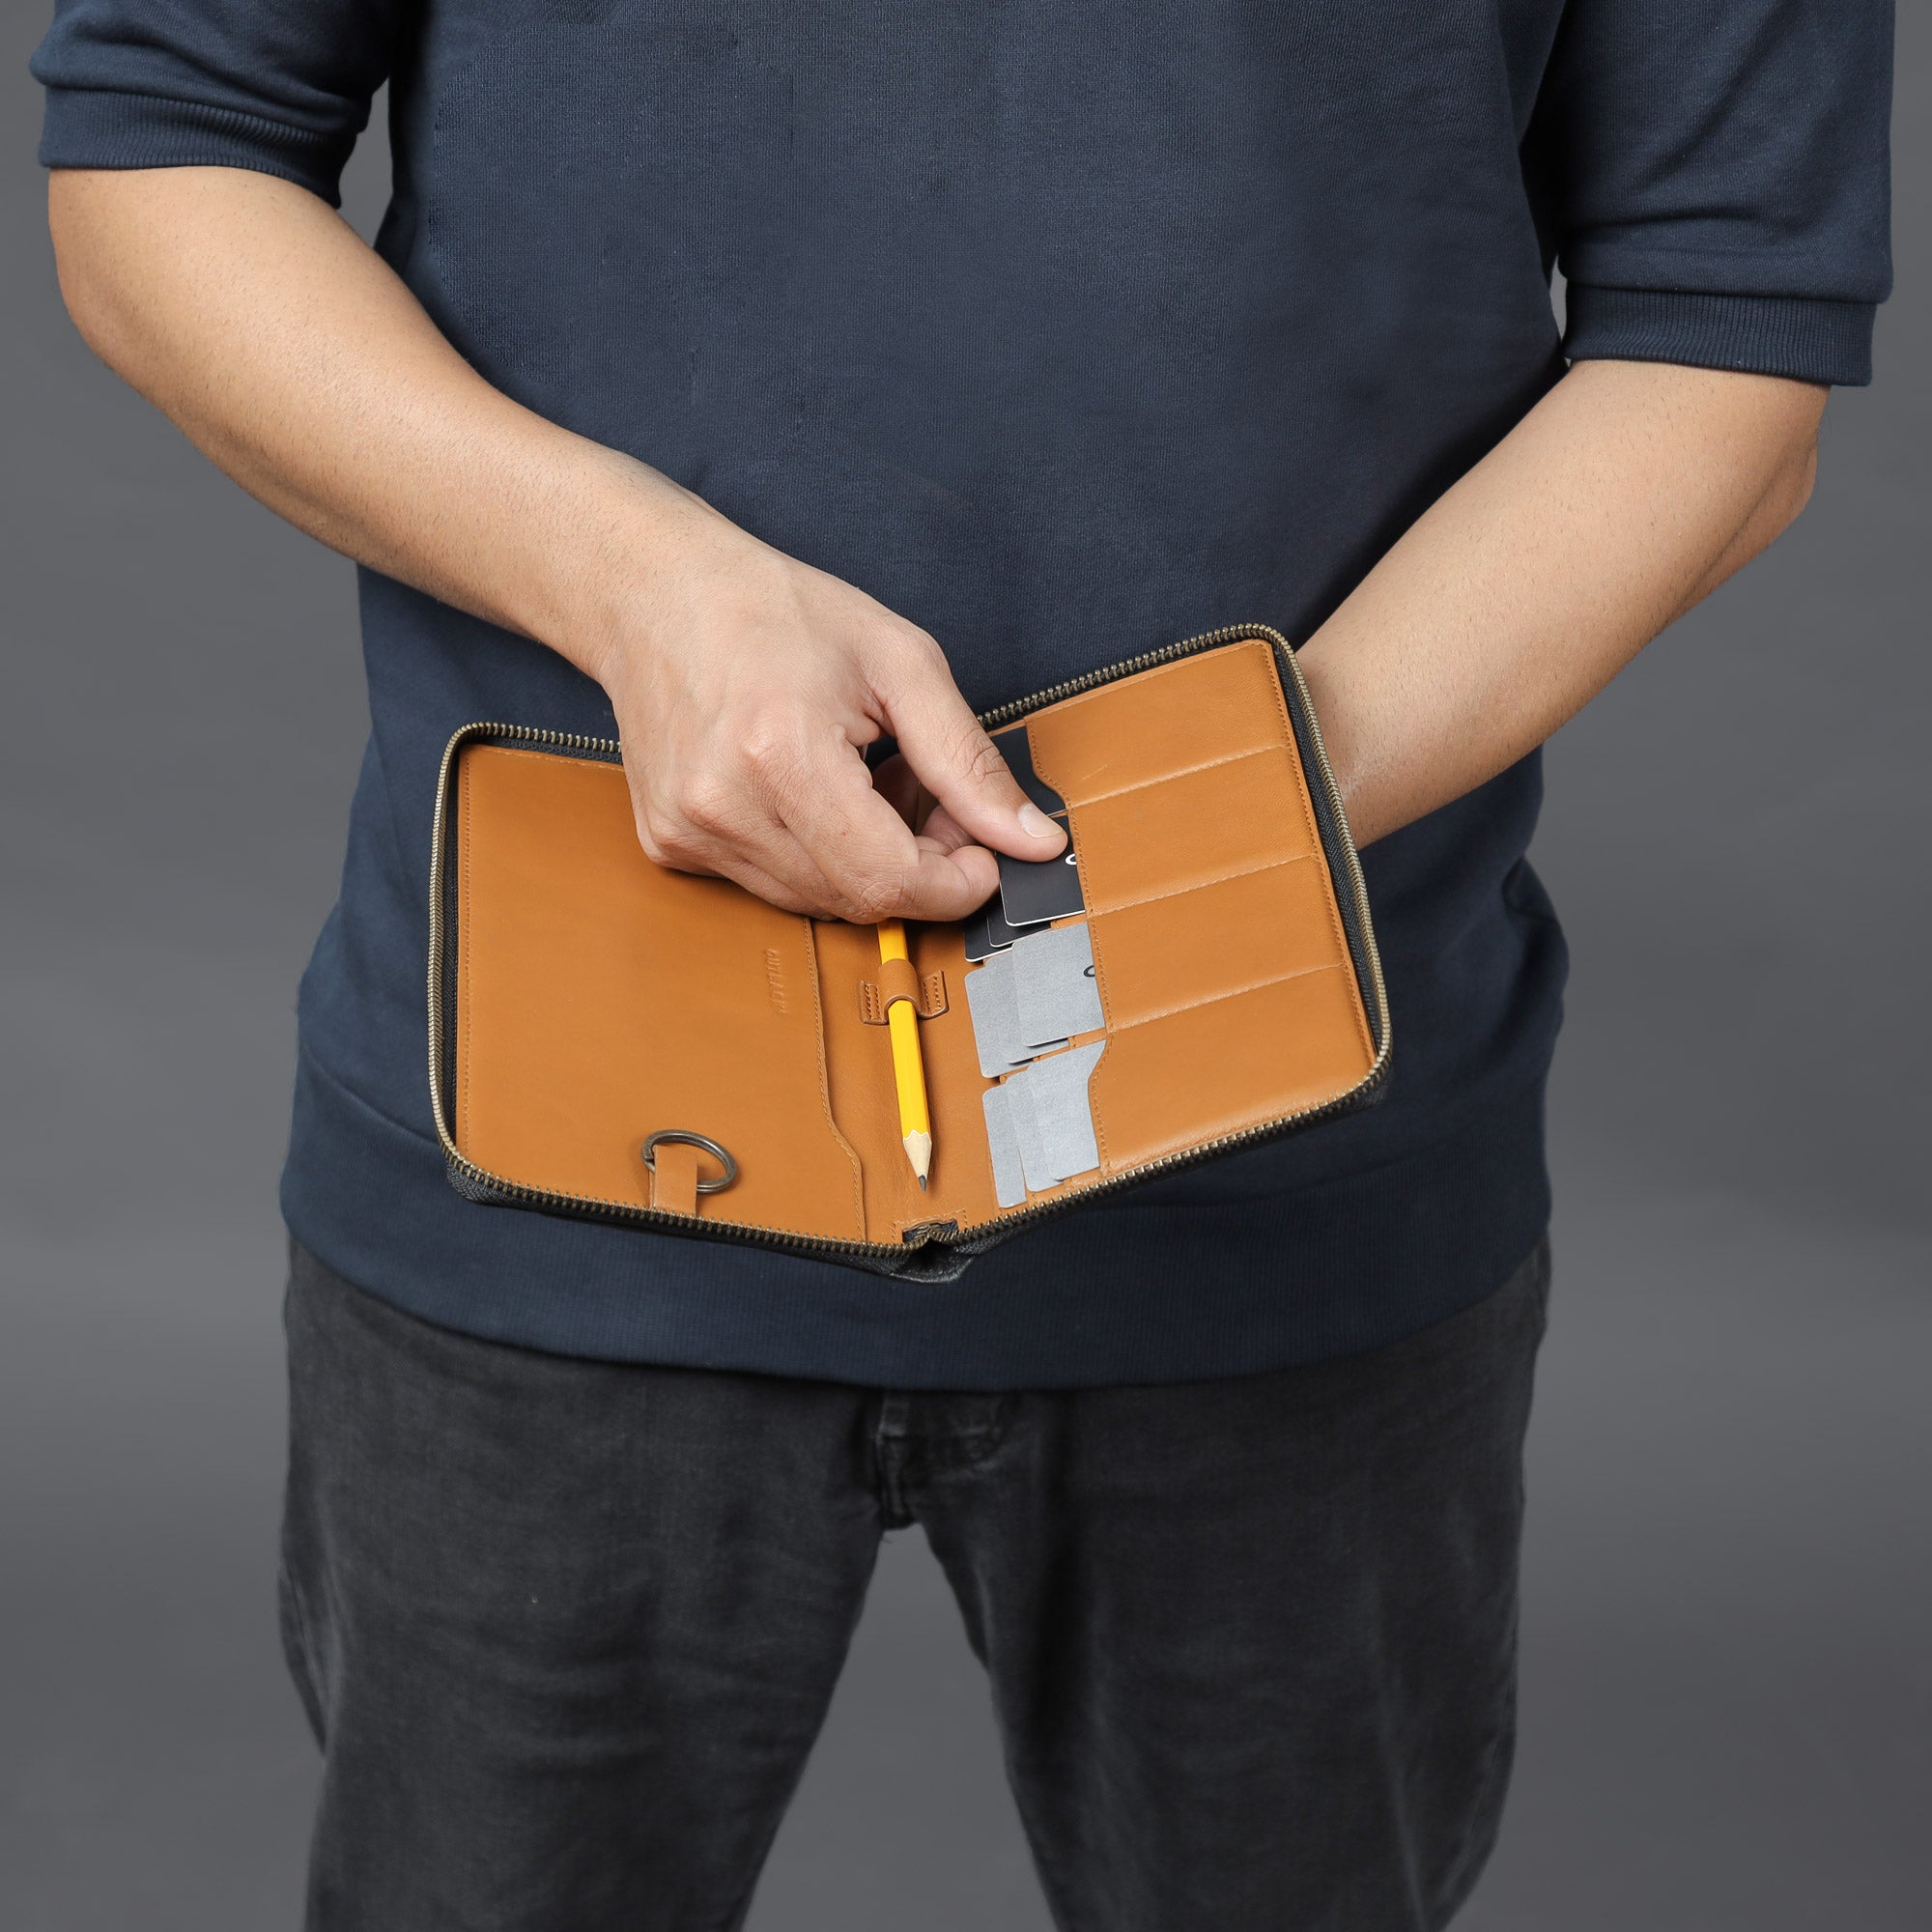 Unisex Chequebook Leather wallet